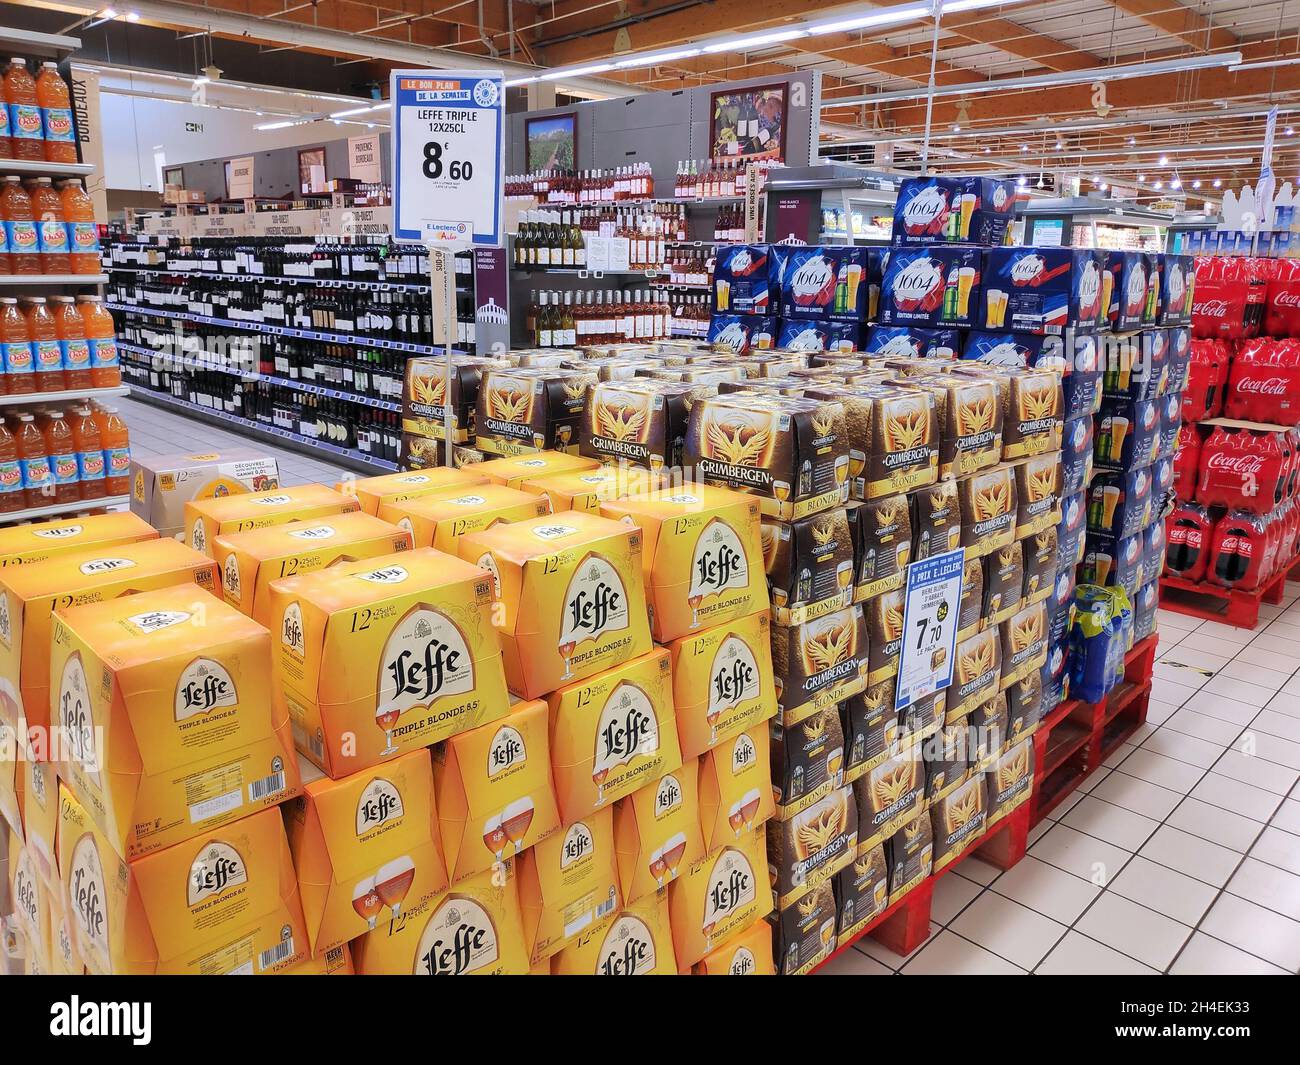 PARIS, FRANKREICH - 1. OKTOBER 2021: Belgische Bierförderung in einem Generikageschäft in Paris, Frankreich. Europäische Supermarktgänge. Stockfoto